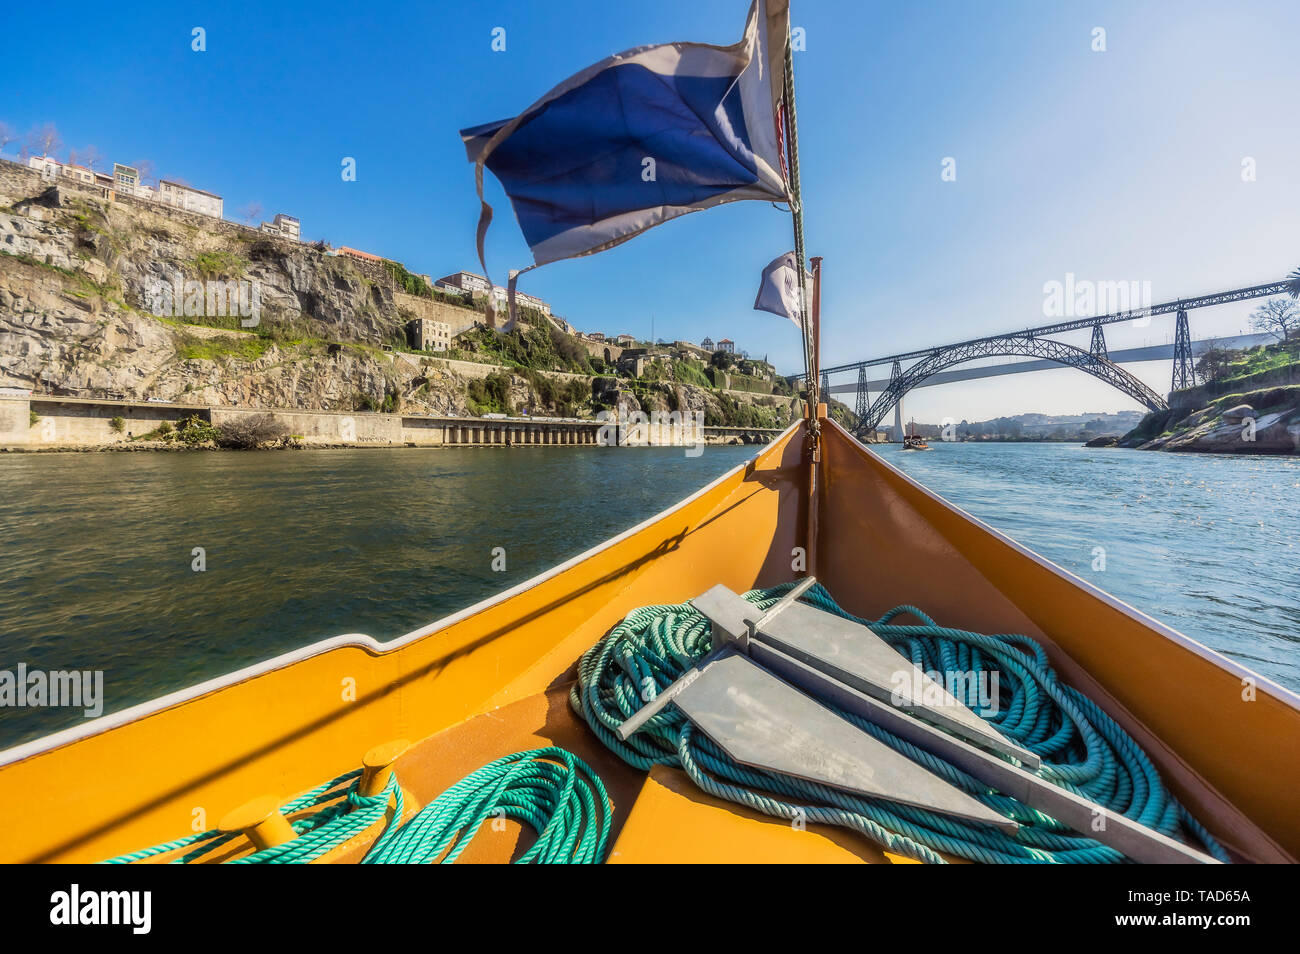 Portugal, el Oporto, el río Duero, barco de recreo y Luiz I Puente en el fondo Foto de stock